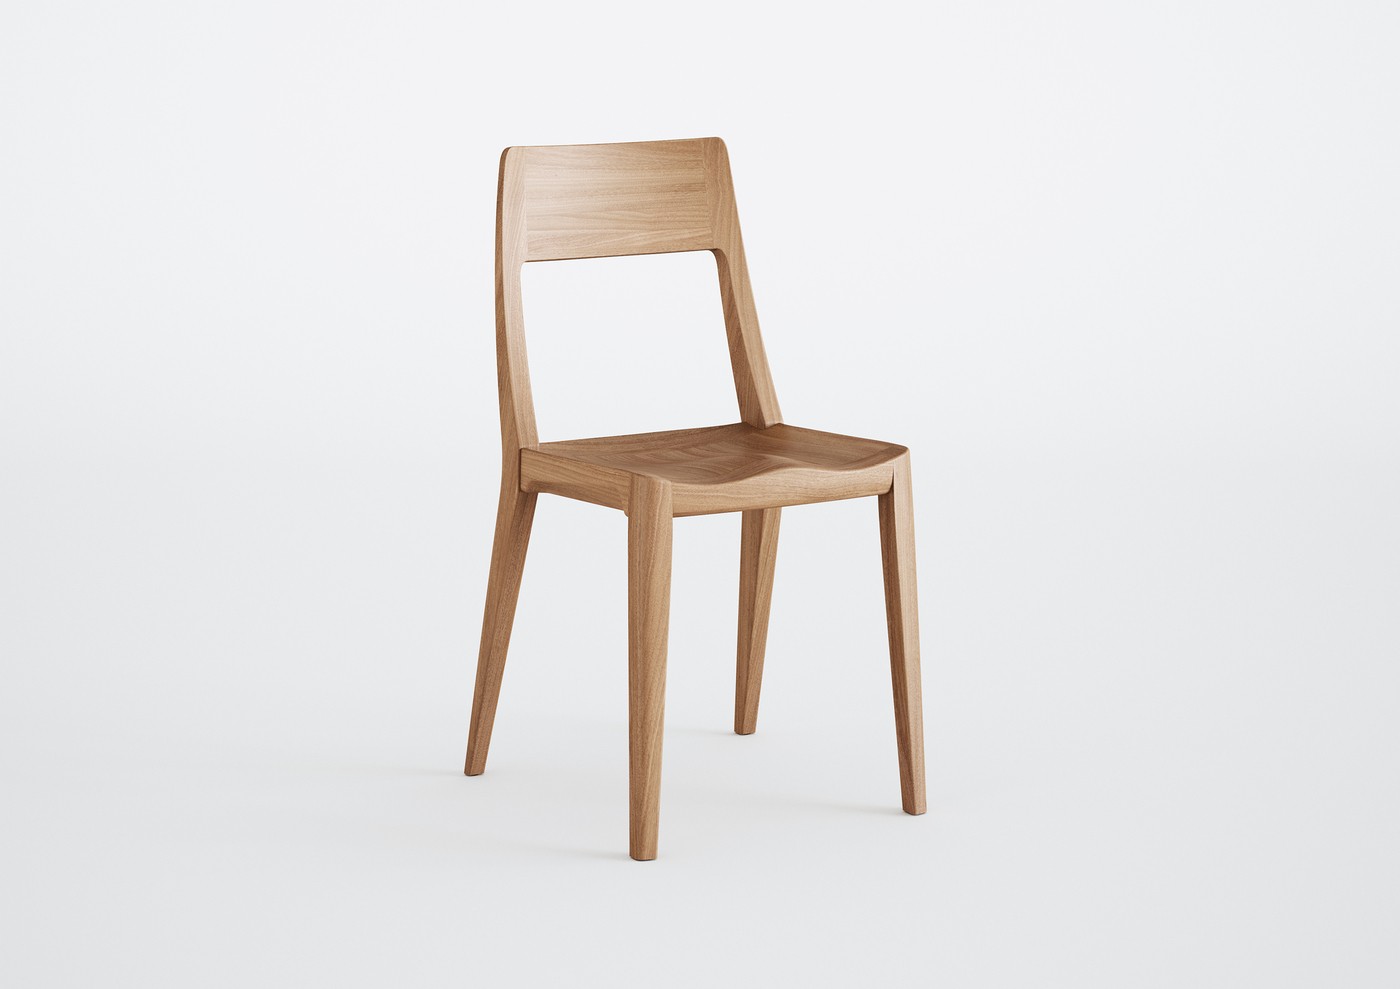 Troféu Bronze da categoria "Design com tecnologia empregada à produção": cadeira One, criada pelo designer Everton Visentini. Produzida pela Indústria Memor Design  